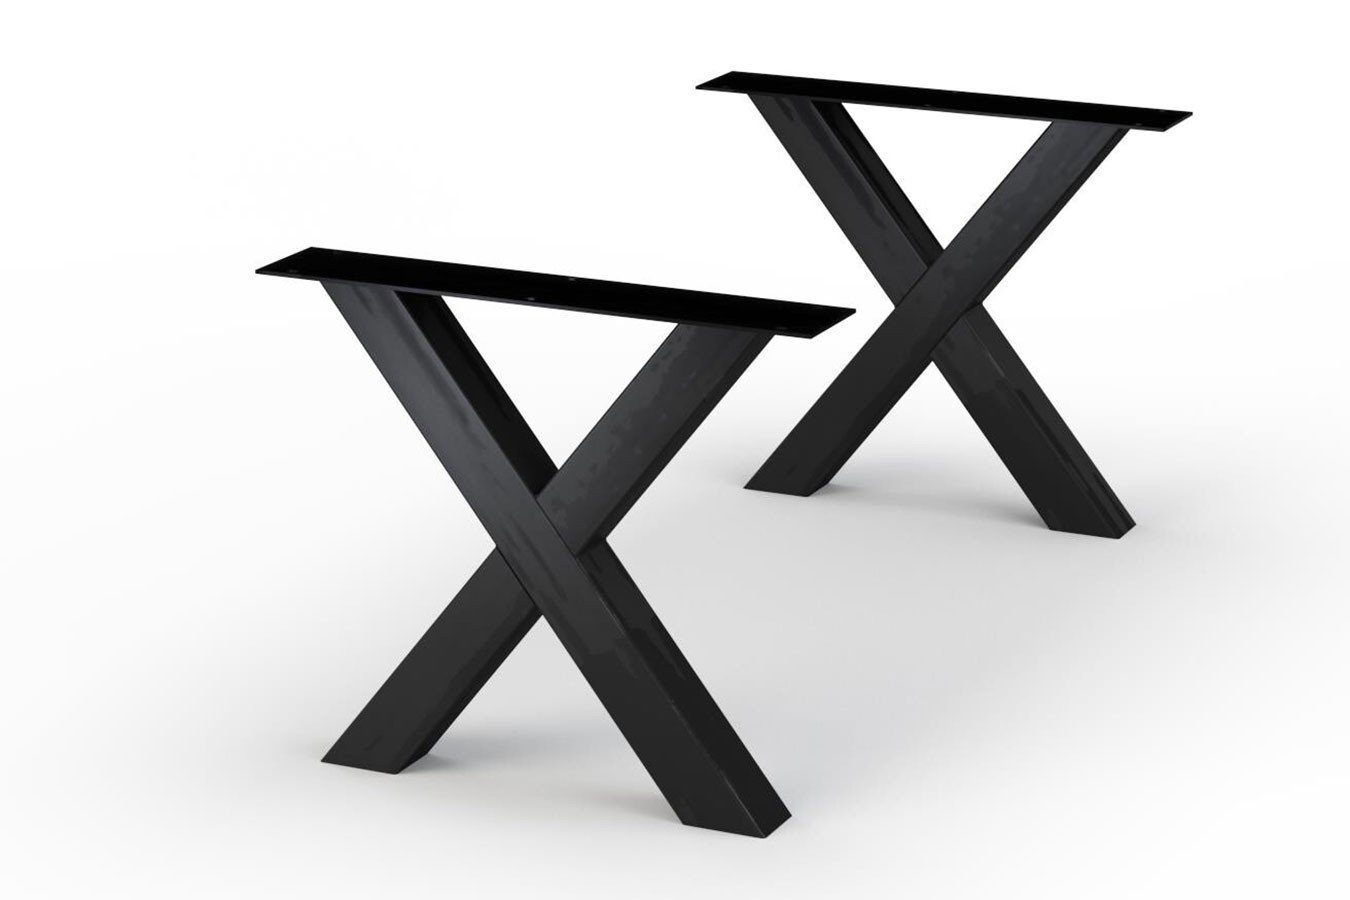 Tischbein living Salisbury daslagerhaus Tischbein X-Form Set schwarz